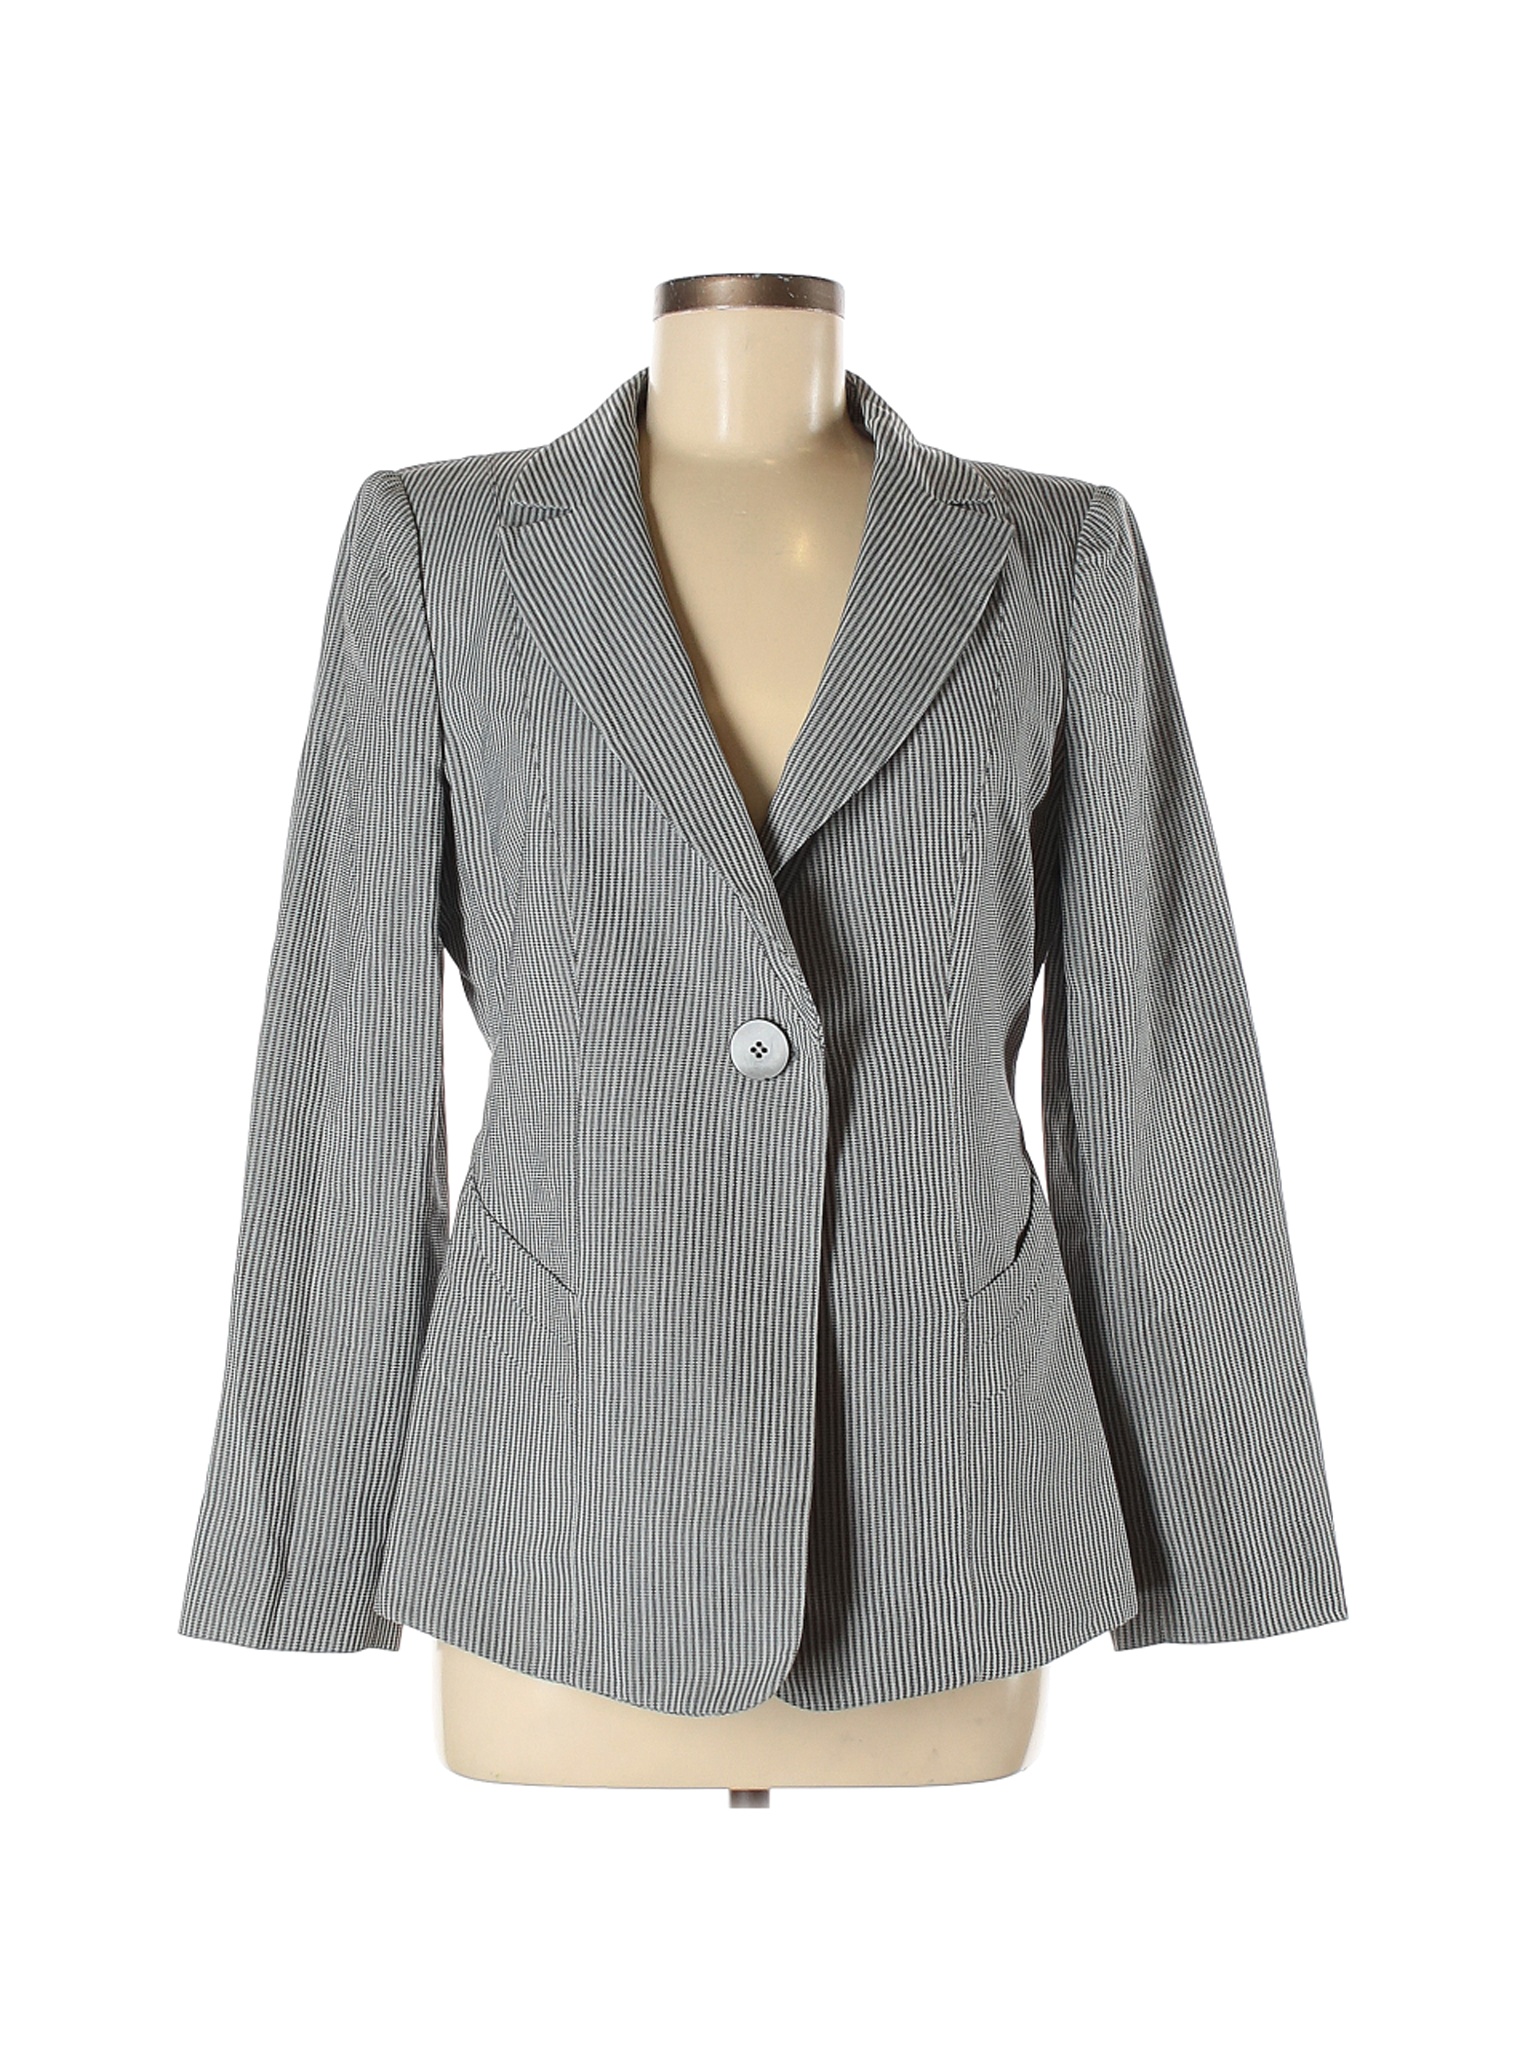 Armani Collezioni Women Gray Blazer 8 | eBay